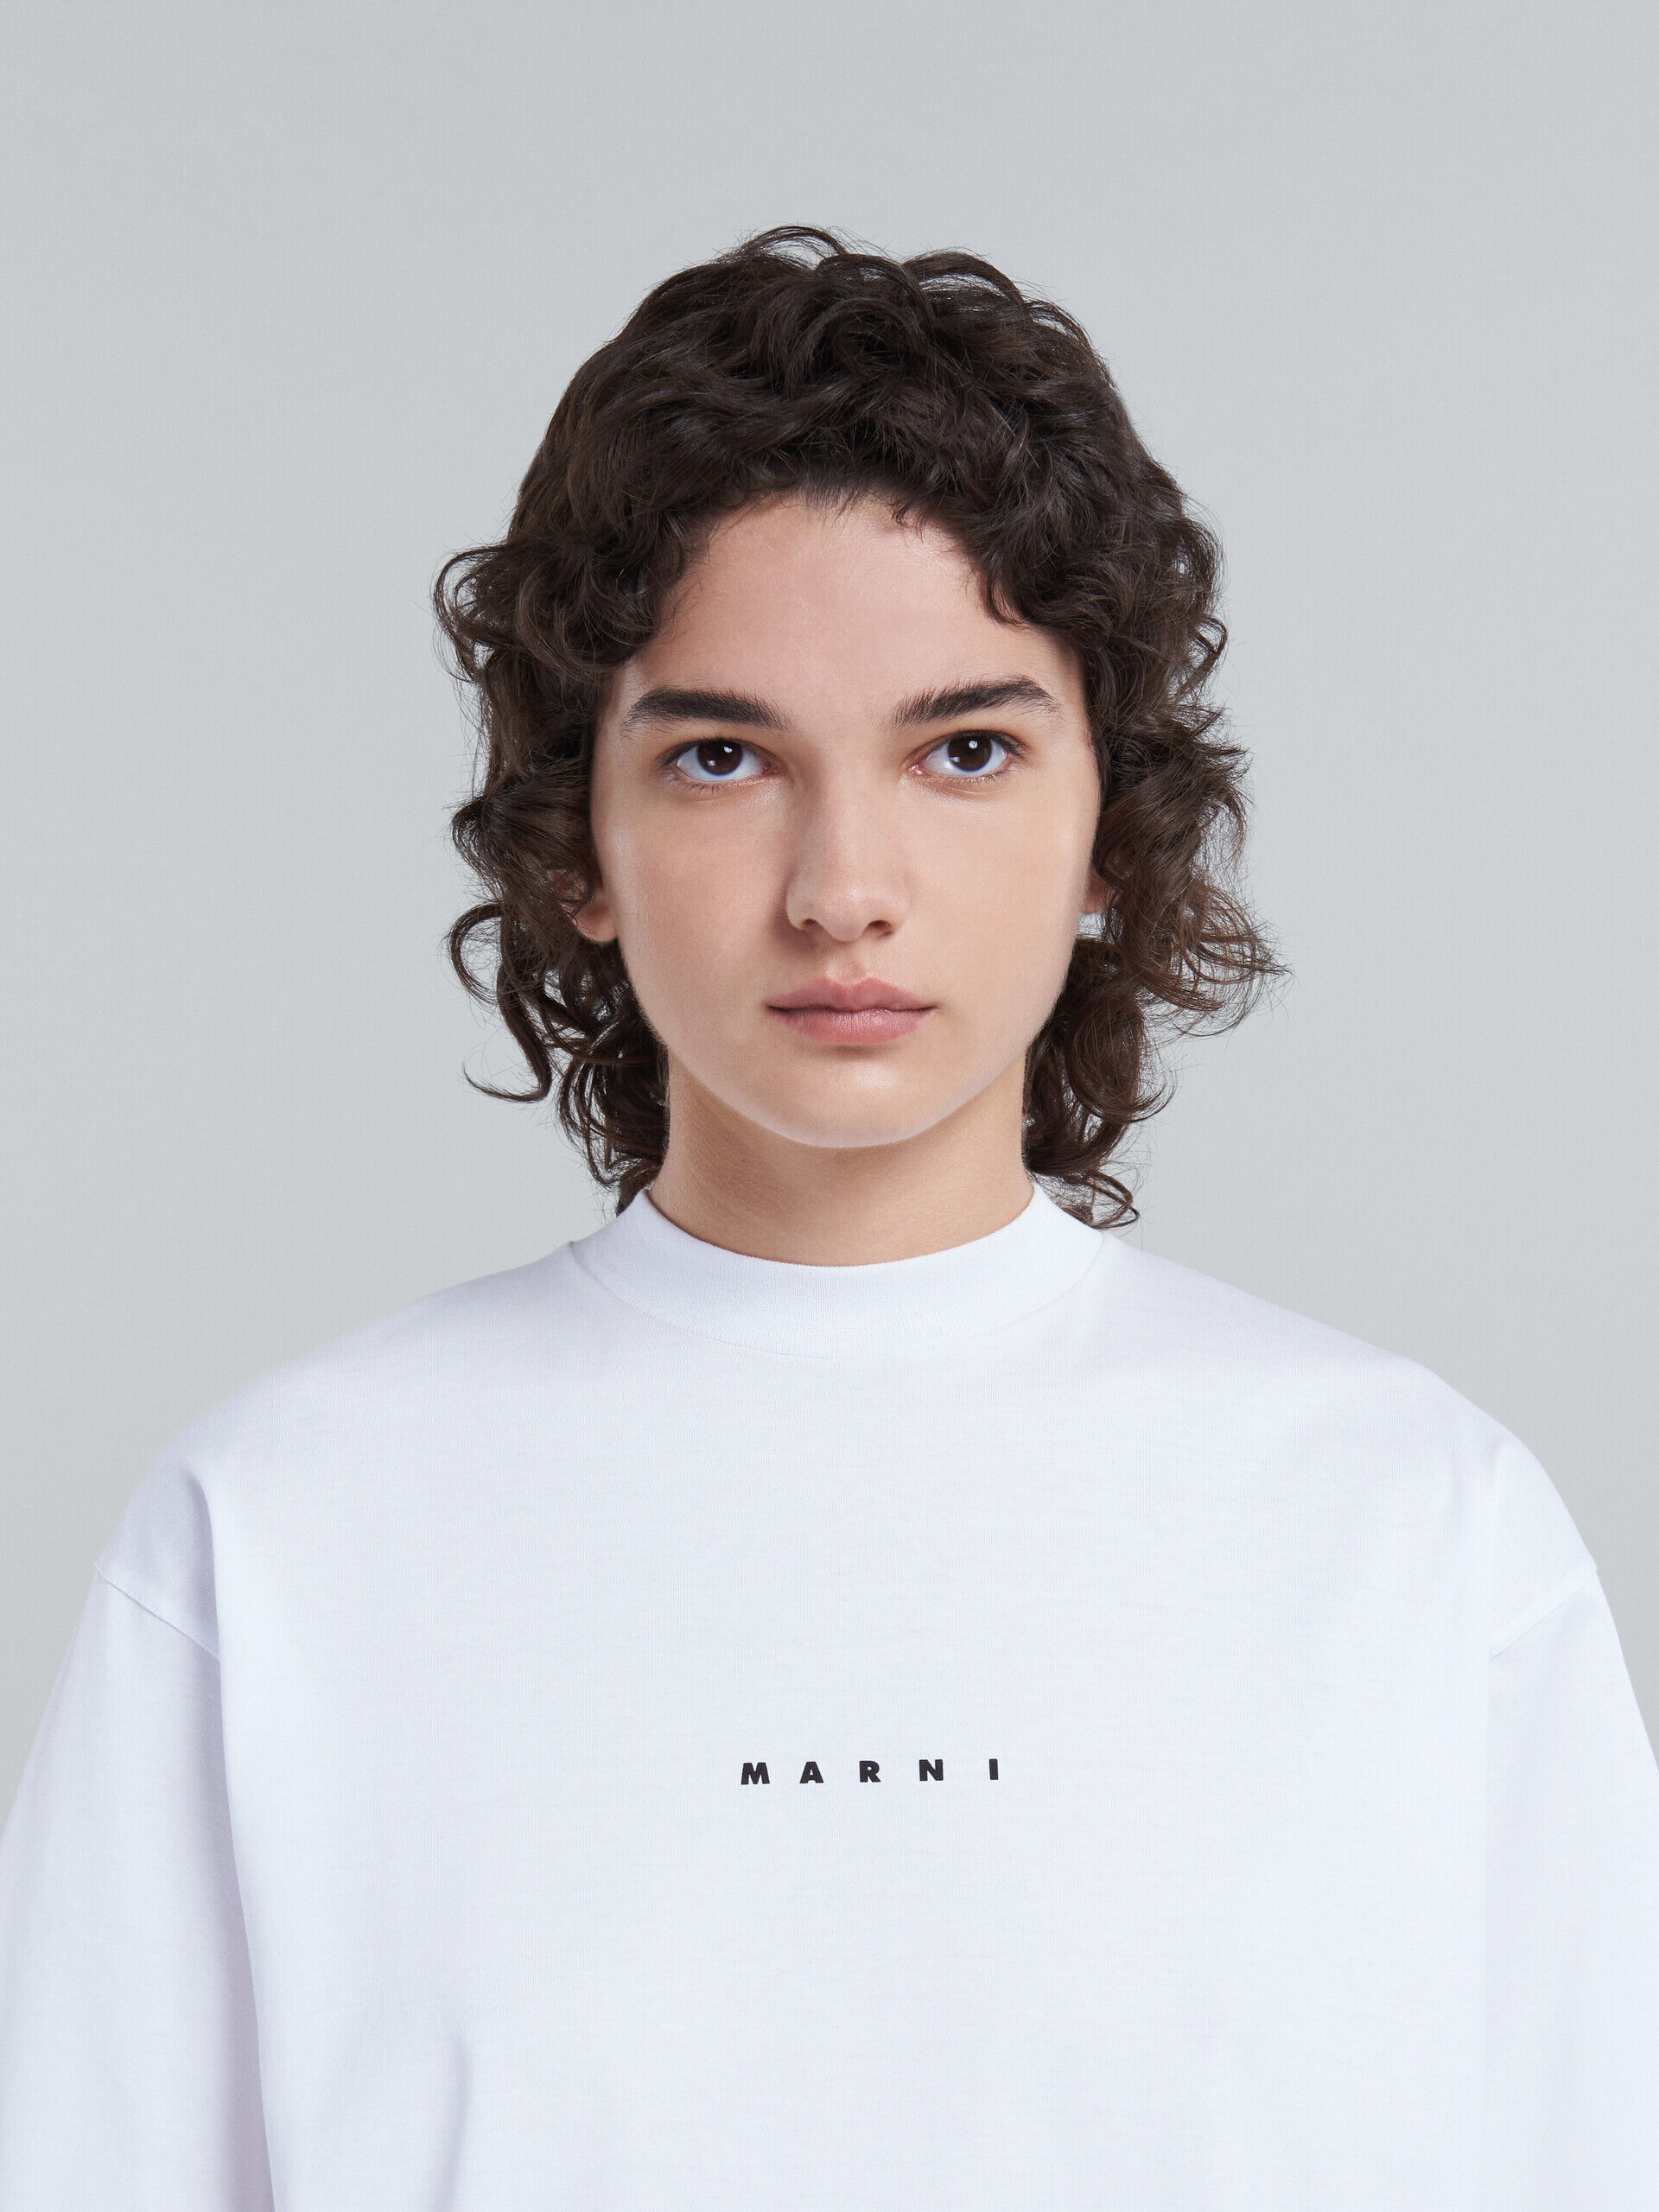 ホワイト ロゴ入り オーガニックコットン製Tシャツ | Marni